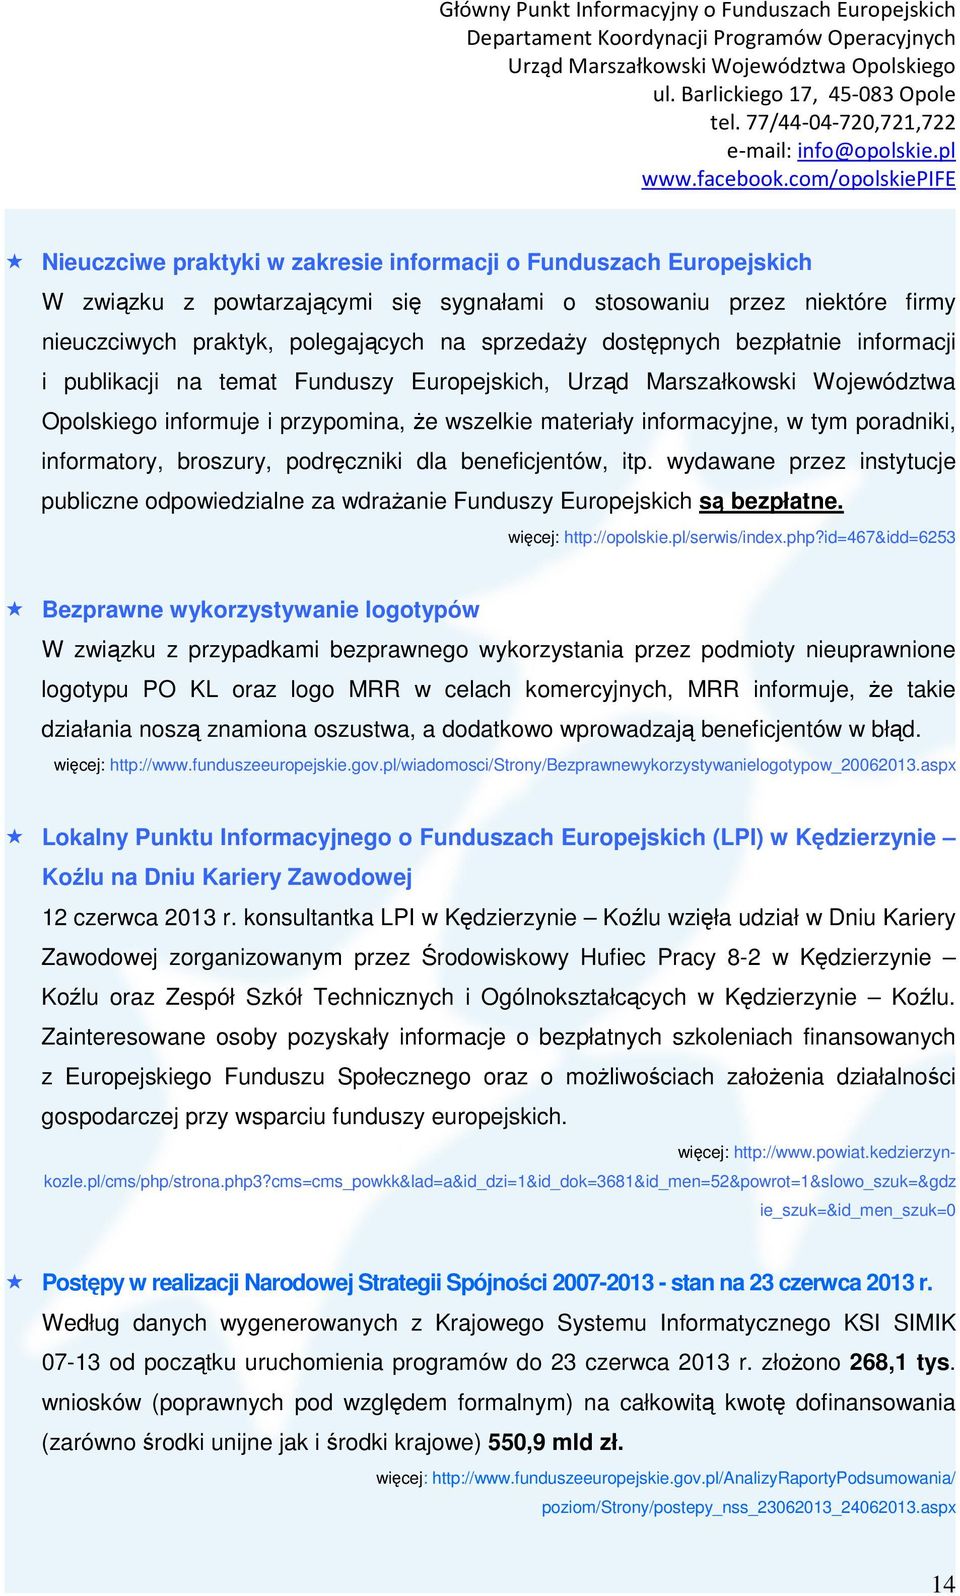 informatory, broszury, podręczniki dla beneficjentów, itp. wydawane przez instytucje publiczne odpowiedzialne za wdrażanie Funduszy Europejskich są bezpłatne. http://opolskie.pl/serwis/index.php?